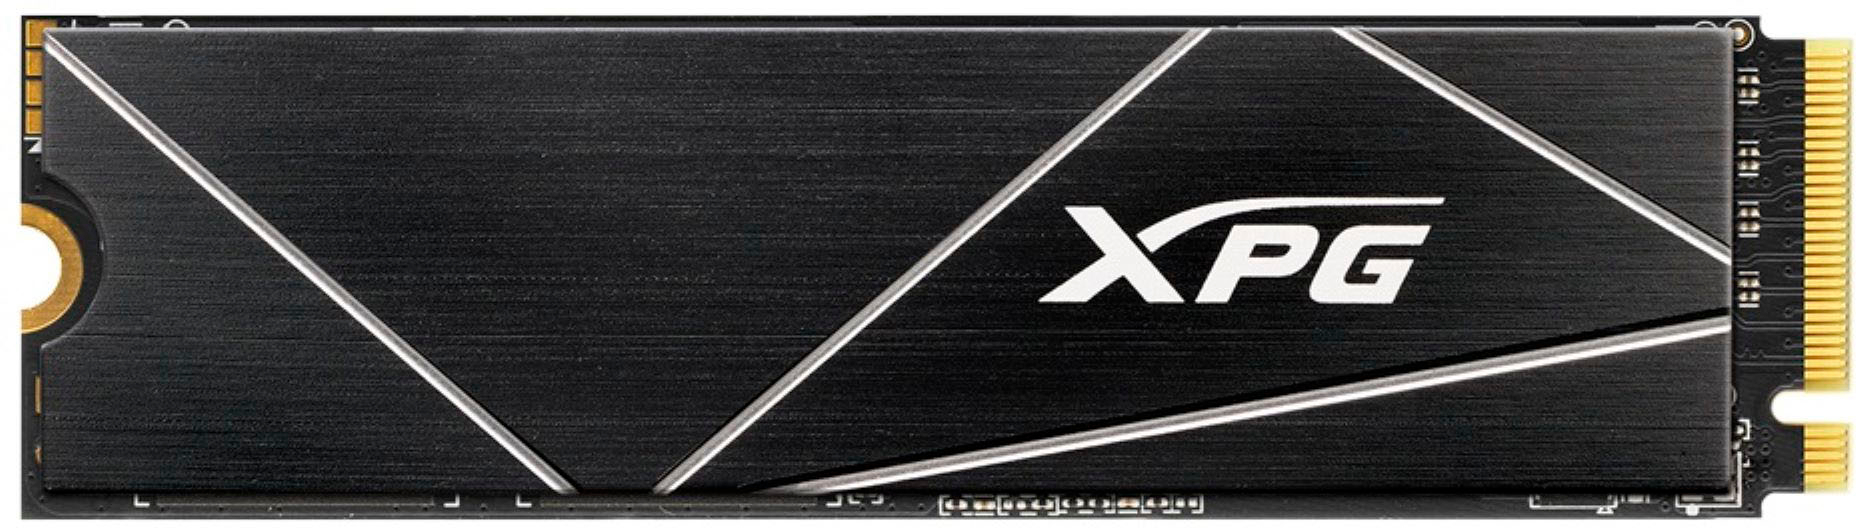 XPG GAMMIX S70 Blade AGAMMIXS70B-4T-CS 4 TB Solid State Drive - M.2 2280 Internal